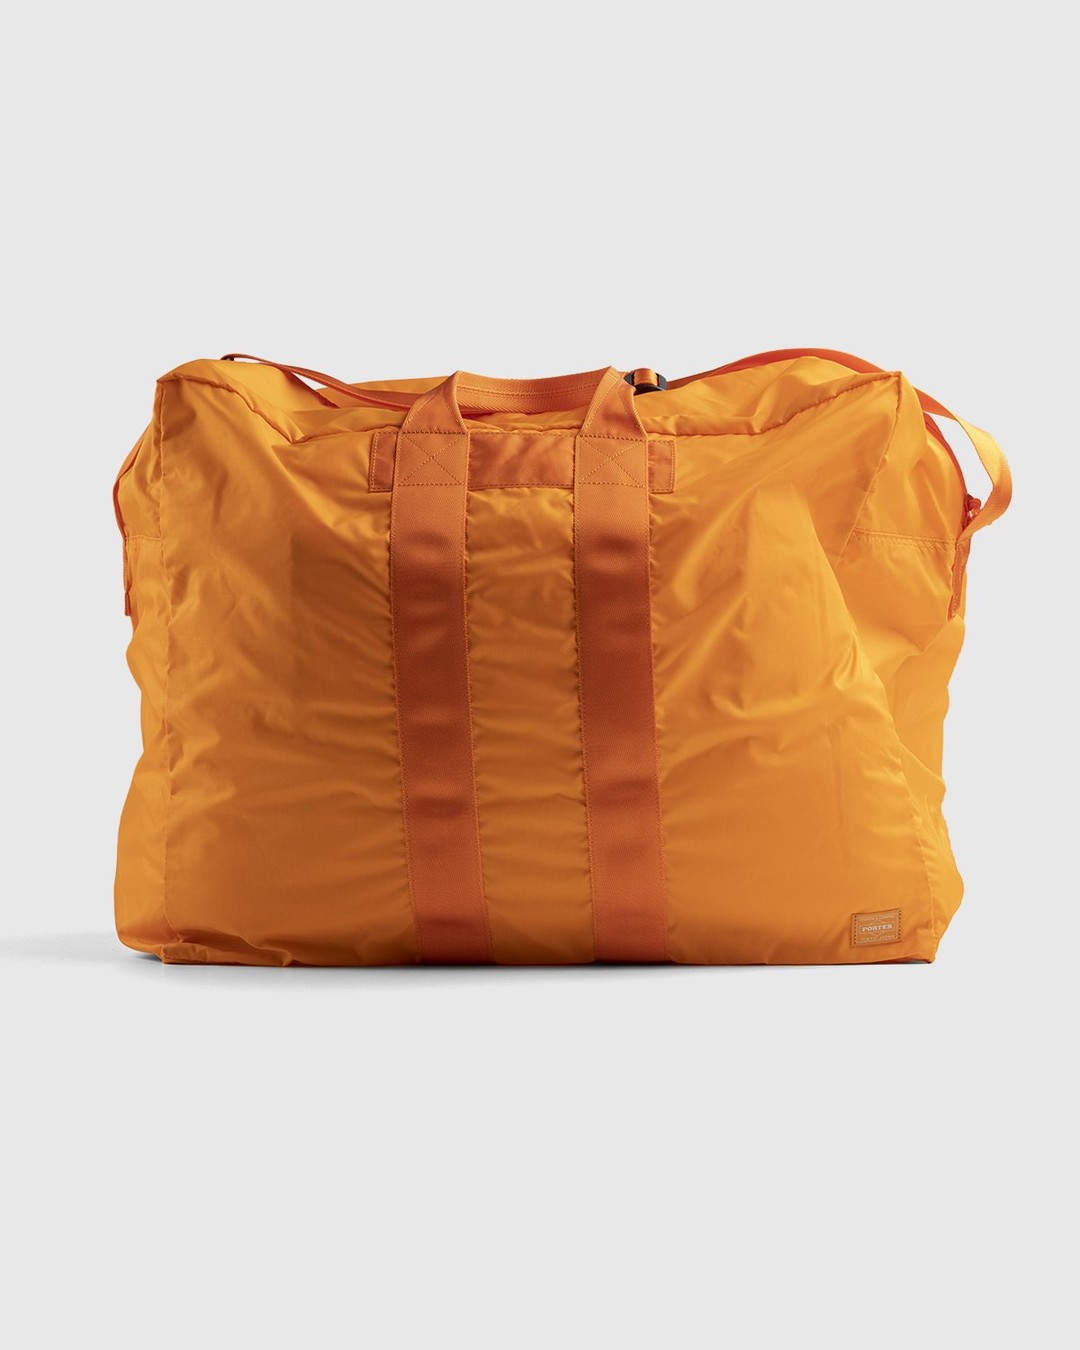 Porter-Yoshida & Co. – Flex 2-Way Duffle Bag Orange - Duffle & Top Handle Bags - Orange - Image 1